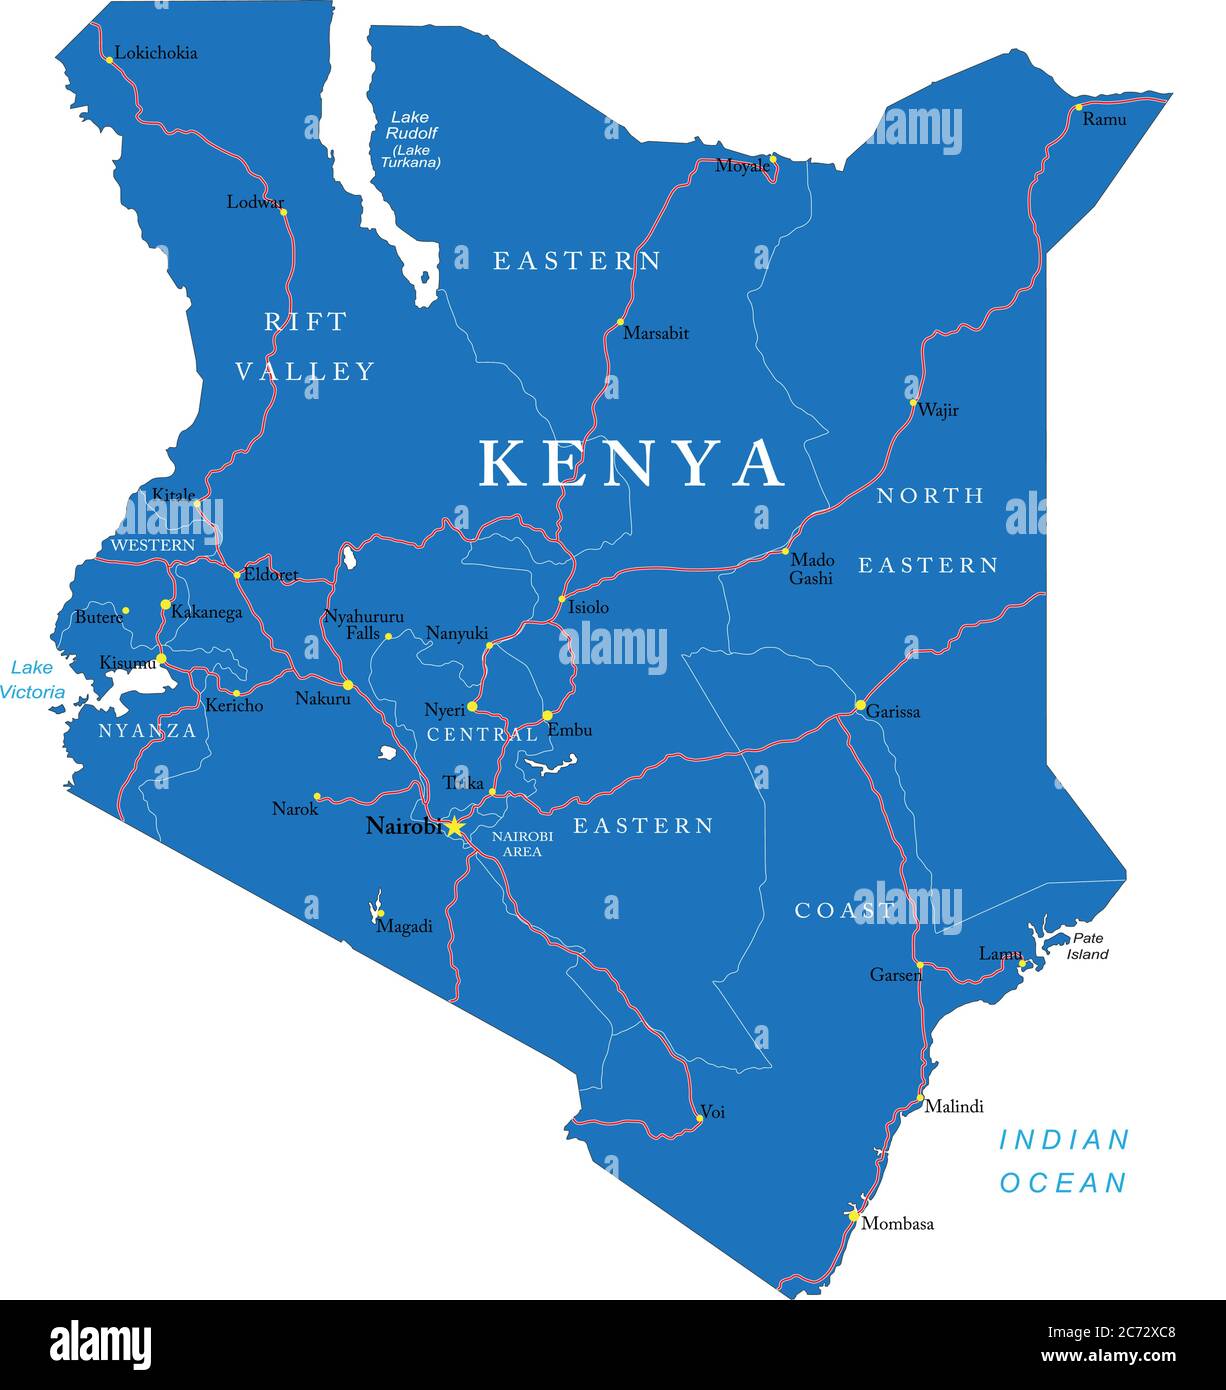 Mappa vettoriale altamente dettagliata del Kenya con regioni amministrative, città principali e strade Illustrazione Vettoriale